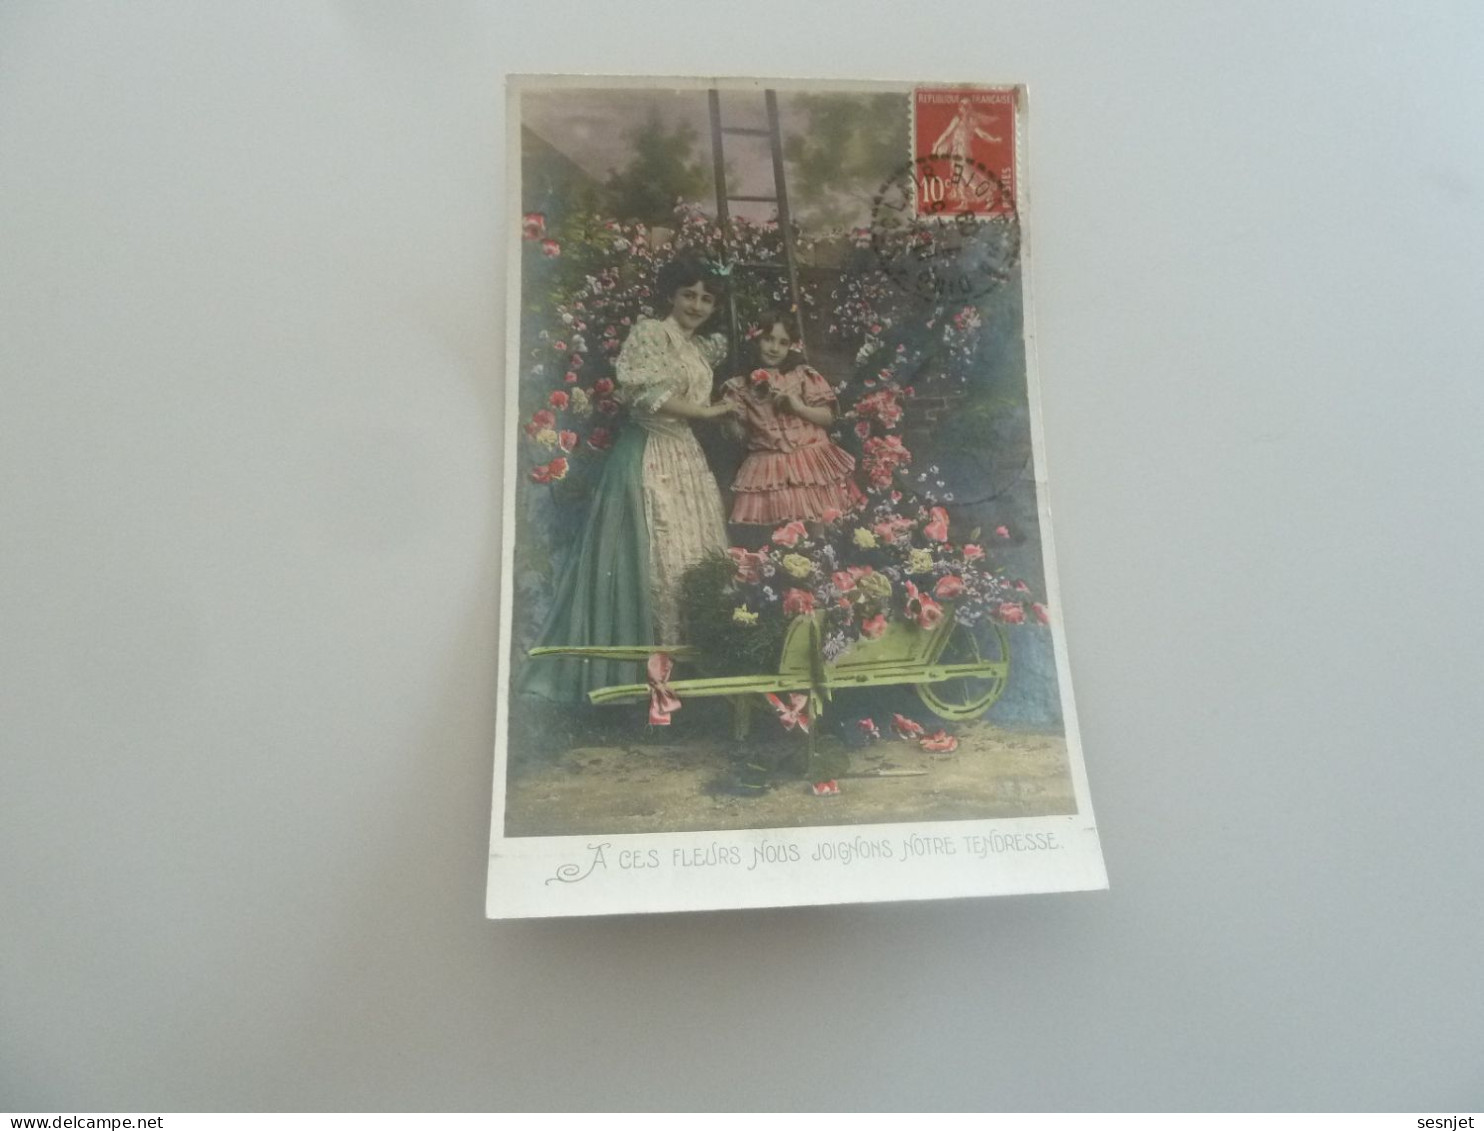 Dingy Saint-Clair - A Ces Fleurs Nous Joignons Notre Tendresse - 581 - Yt 135 - Editions A.s - Année 1909 - - Día De La Madre